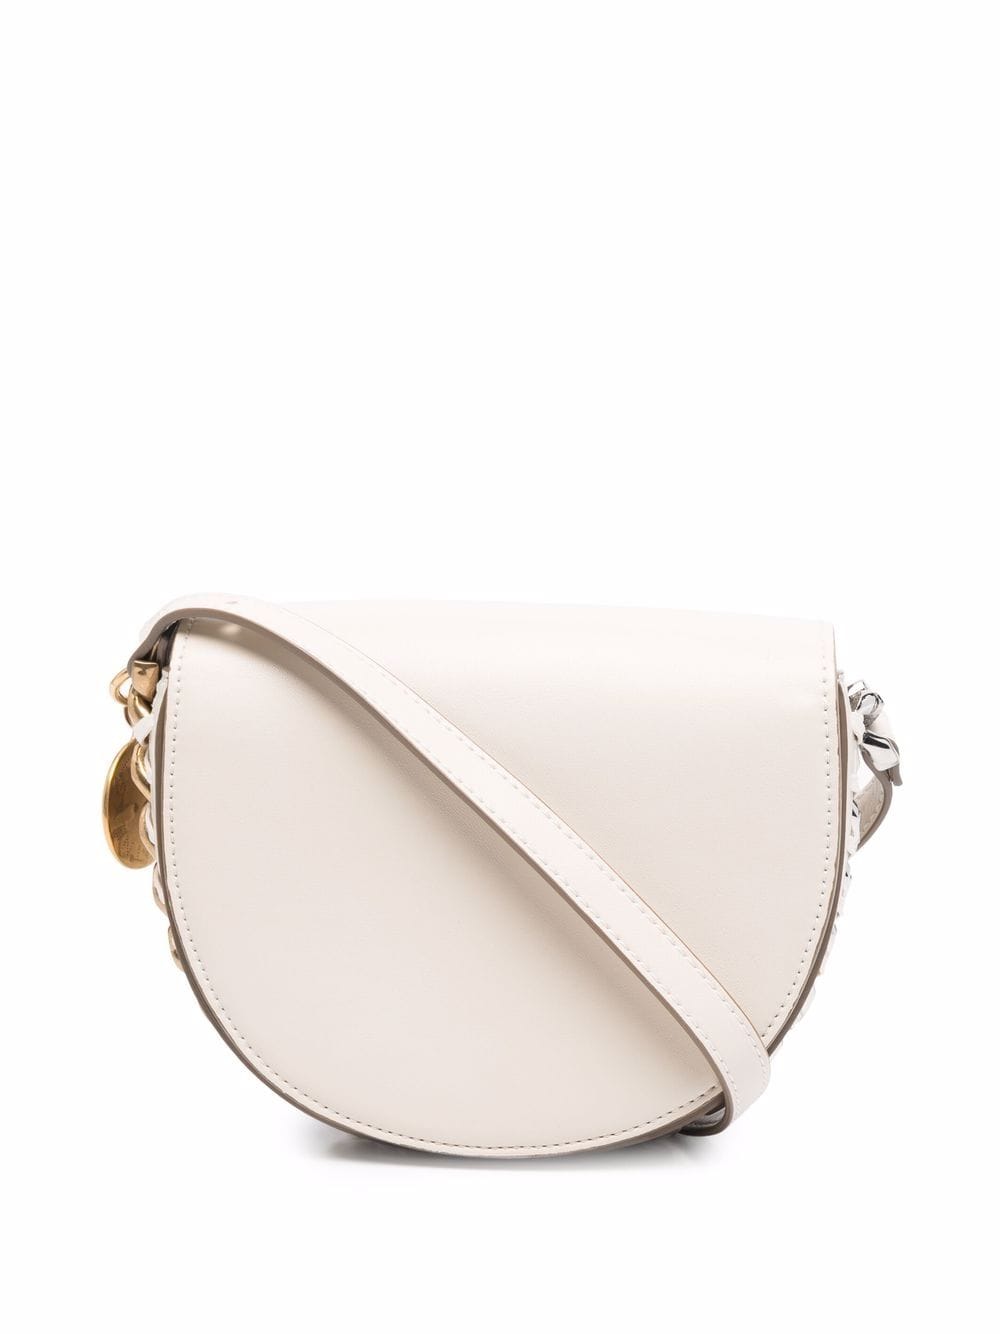 Stella McCartney small Frayme shoulder bag - Neutrals